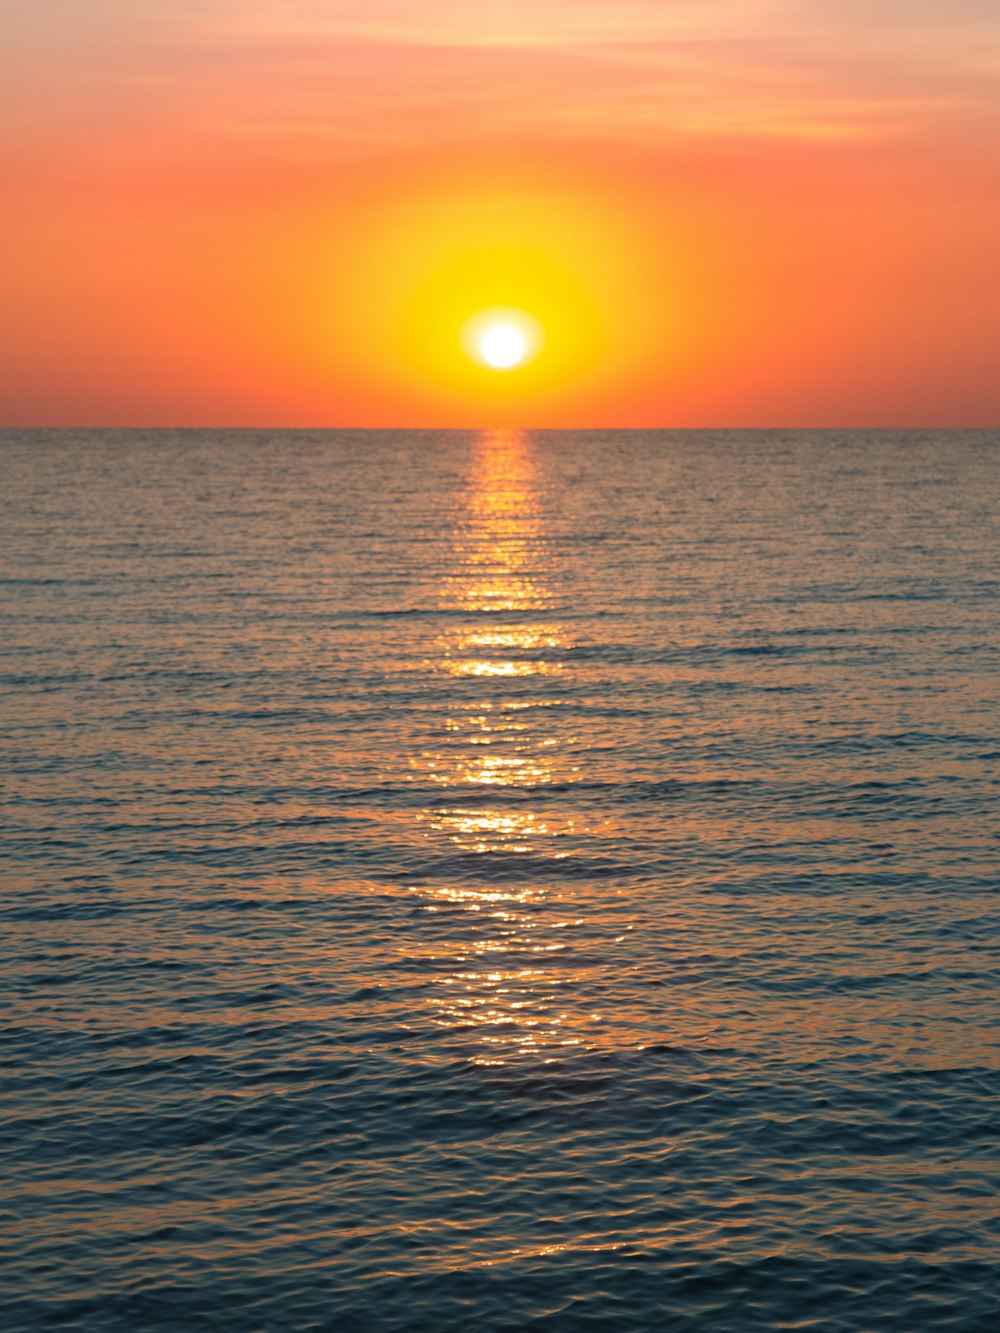 Die Sonne geht über dem Ozean mit einem Boot im Wasser unter